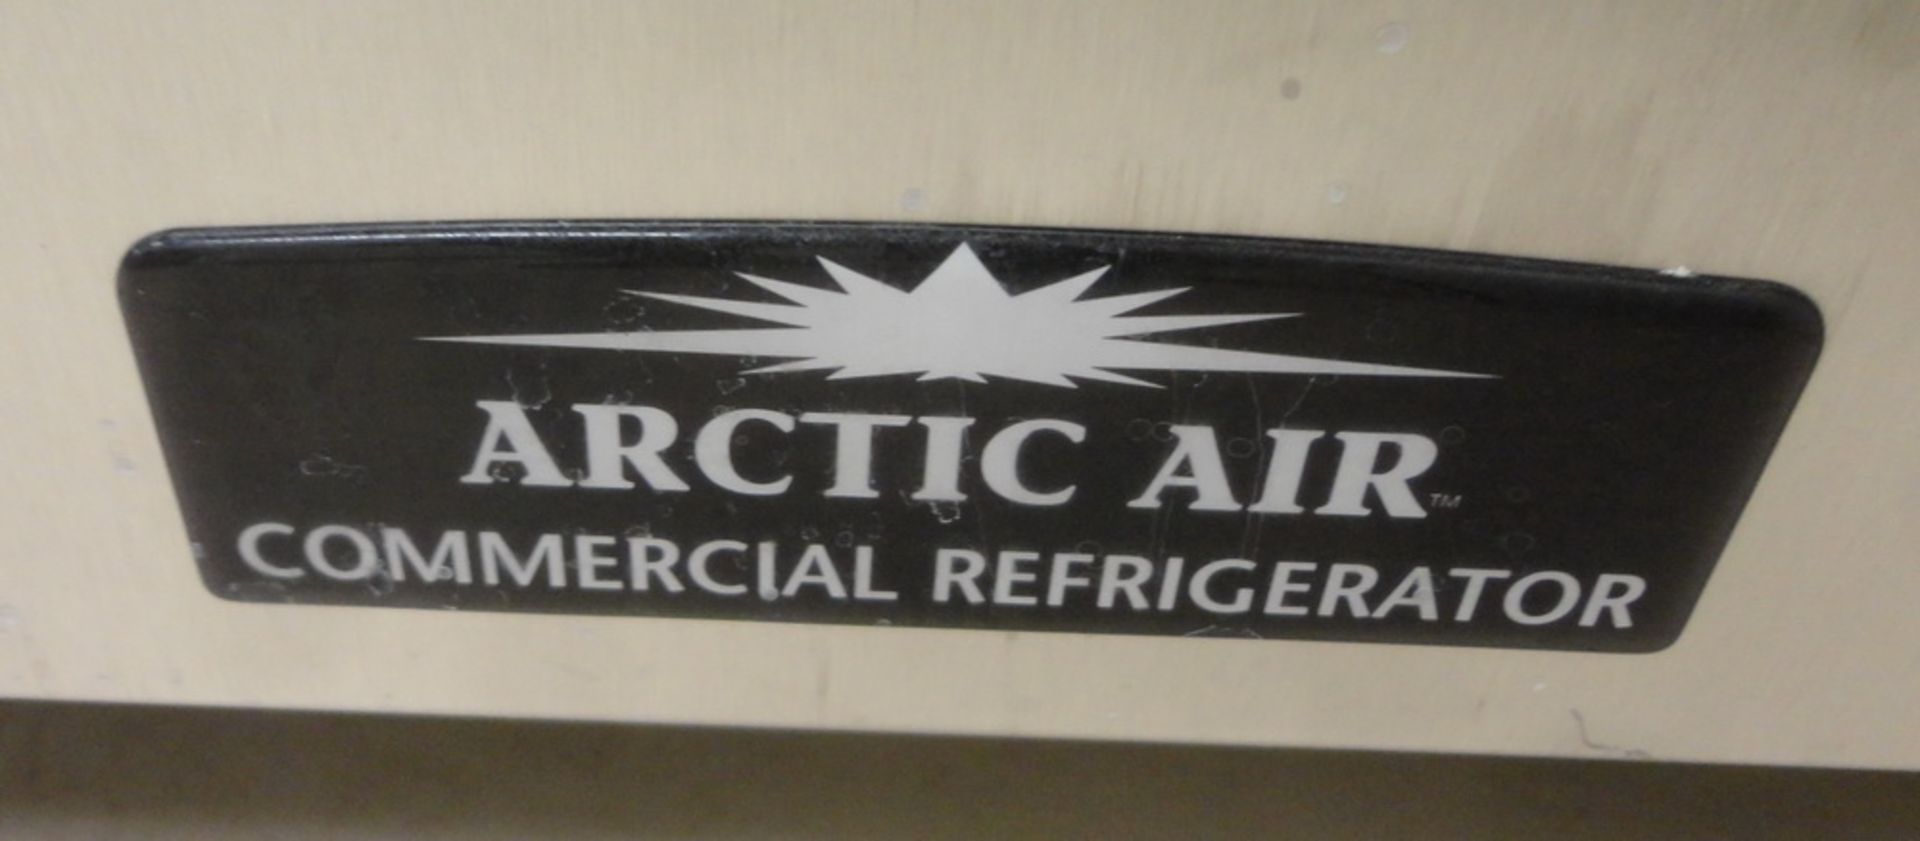 Arctic Air Single Door Refrigerator, portable - Image 2 of 2